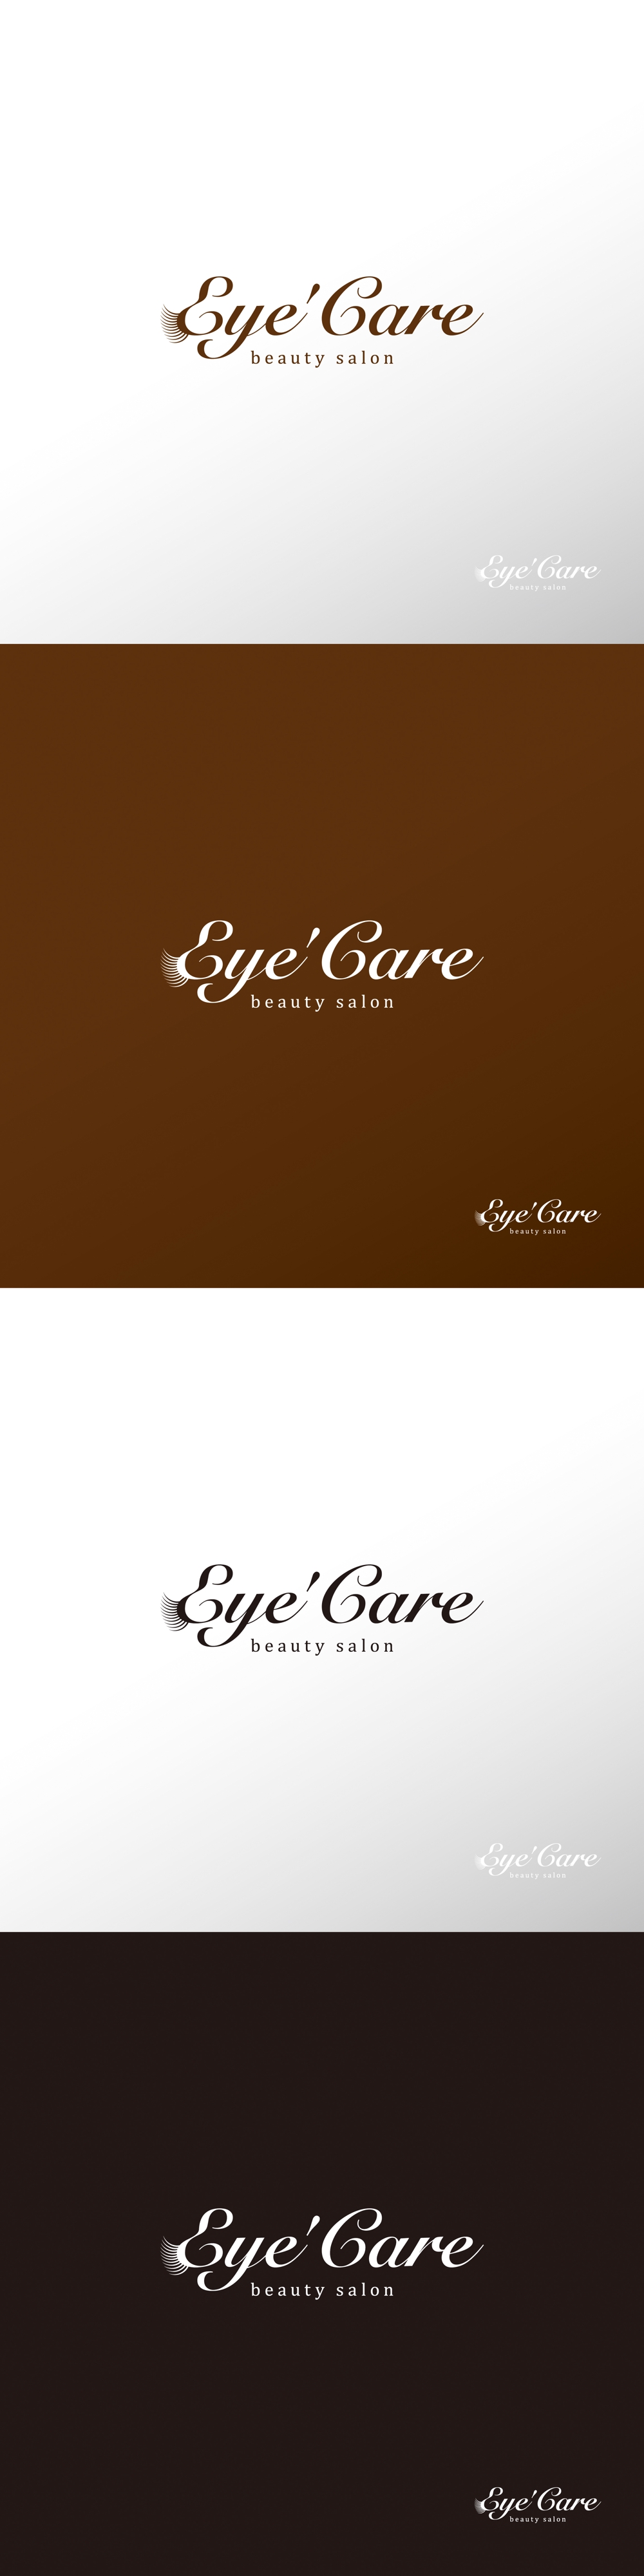 エクステ_Eye'Care_ロゴA1.jpg